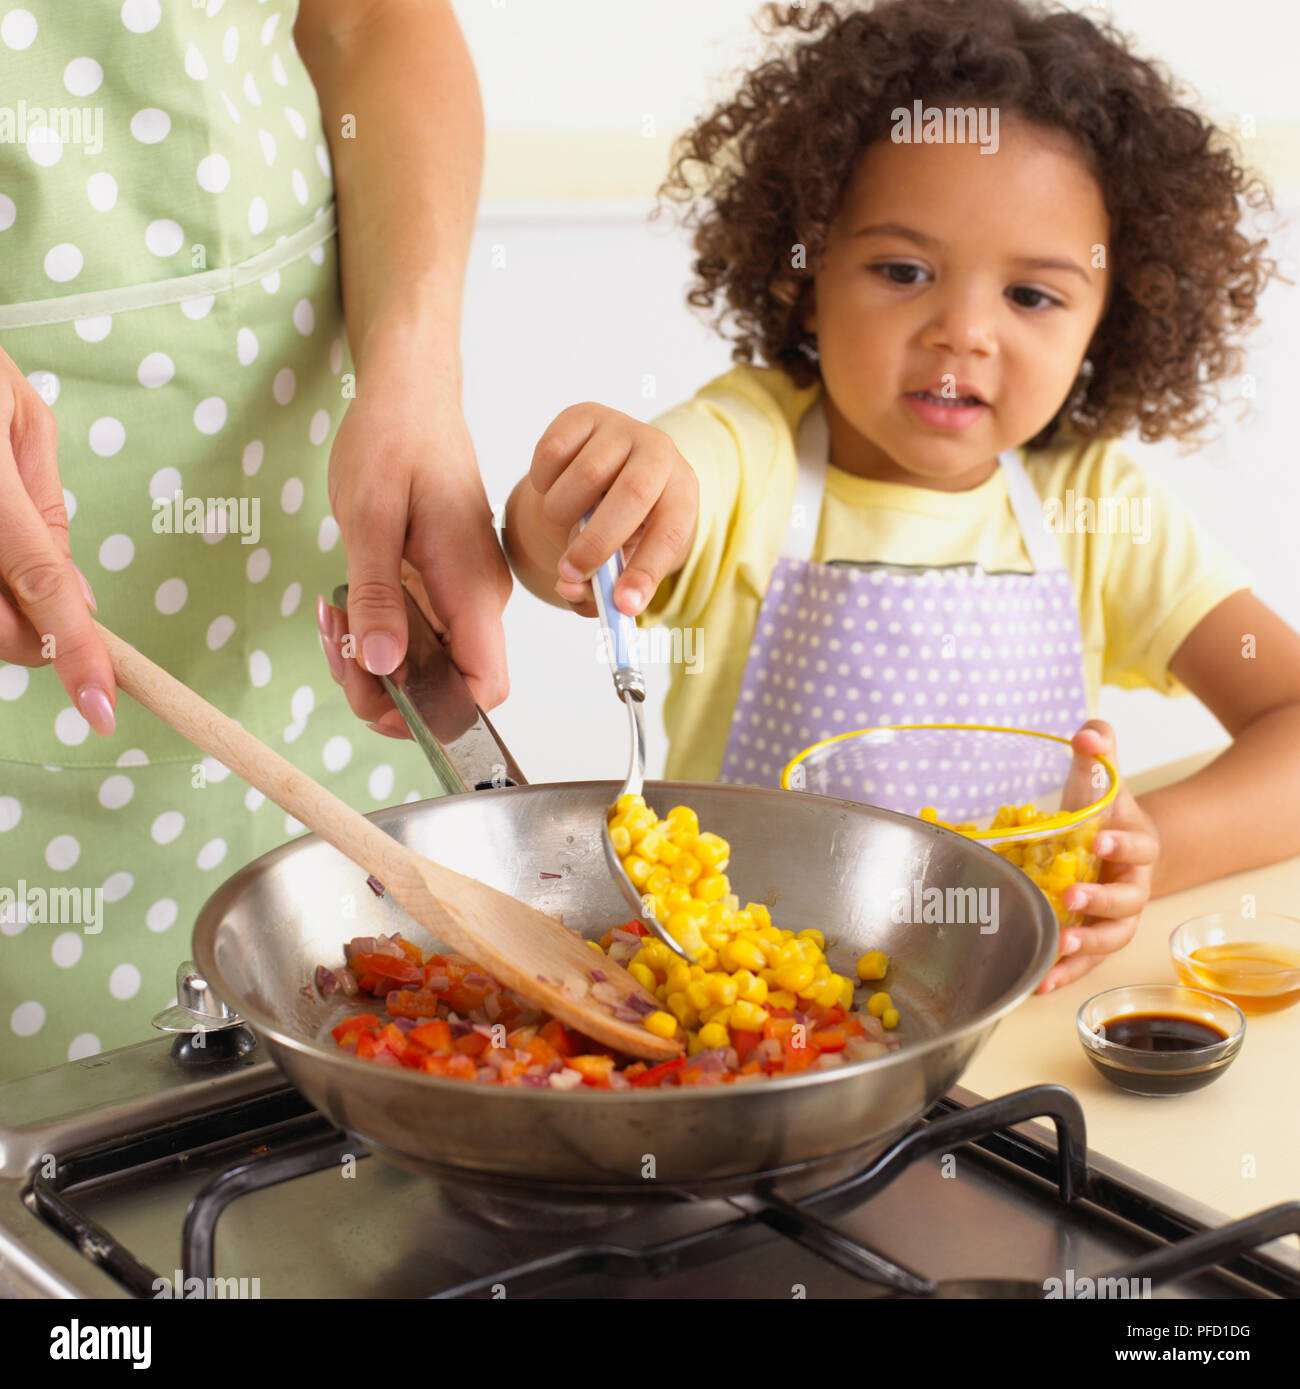 Mädchen hinzufügen Zuckermais mit Löffel, neben Frau rühren, Zwiebeln und Paprika in der Pfanne, Schalen von Zuckermais, Essig und Honig auf der Küchenarbeitsplatte, close-up Stockfoto